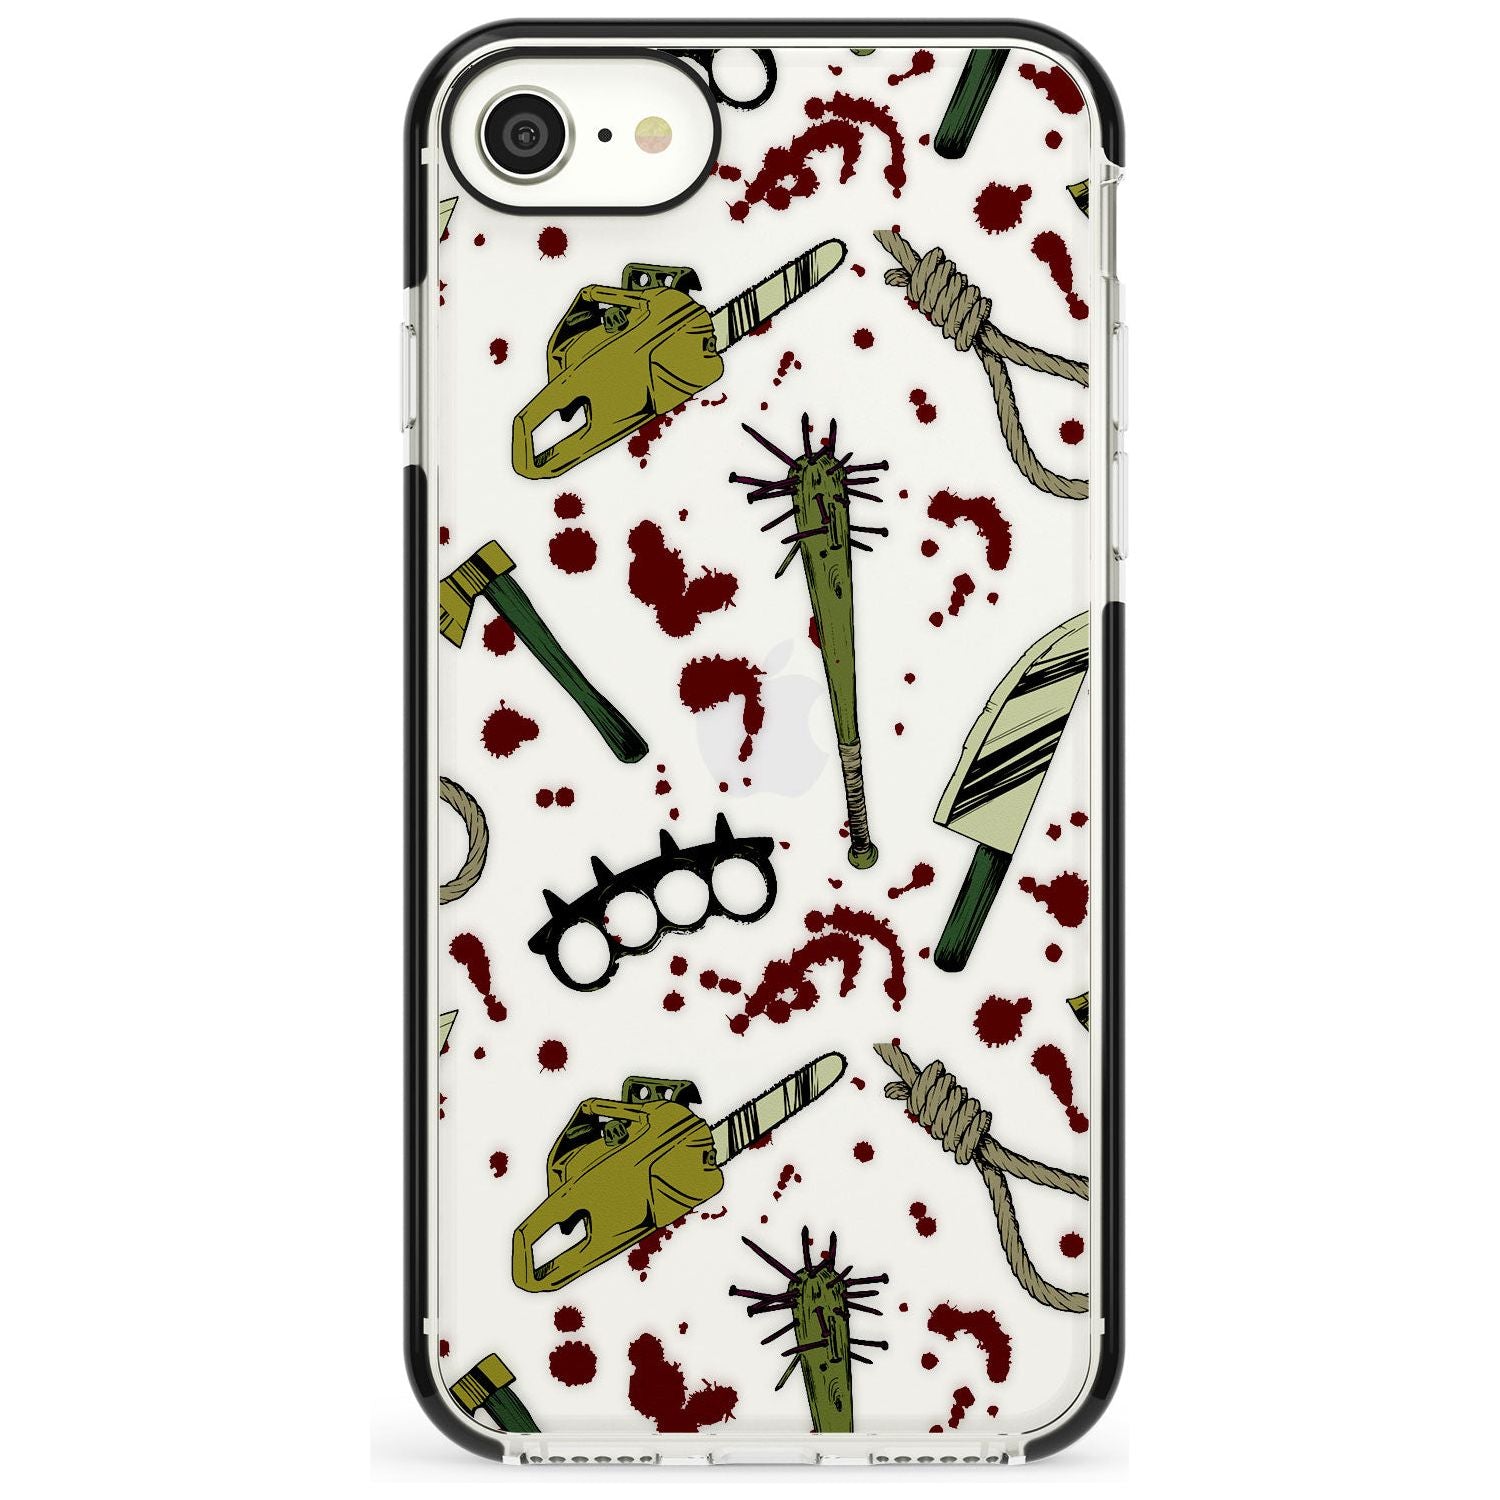 Movie Massacre Black Impact Phone Case for iPhone SE 8 7 Plus